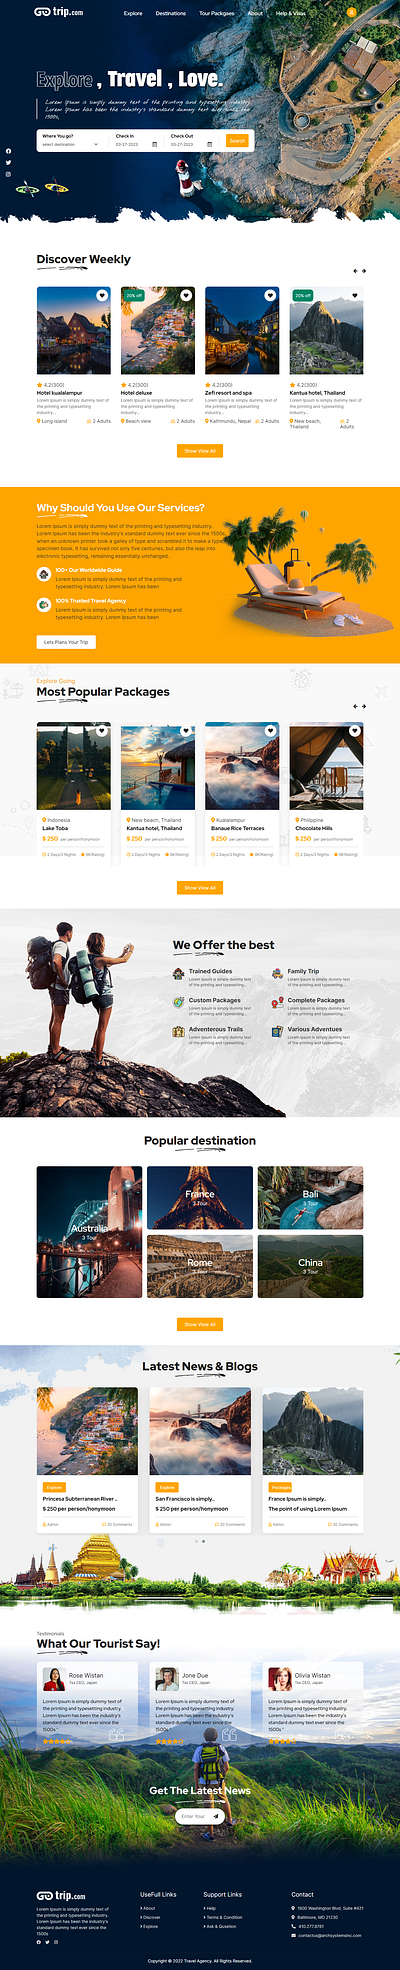 Travel website mock up design graphic design mock up tour and travel website travel agency travel mock up